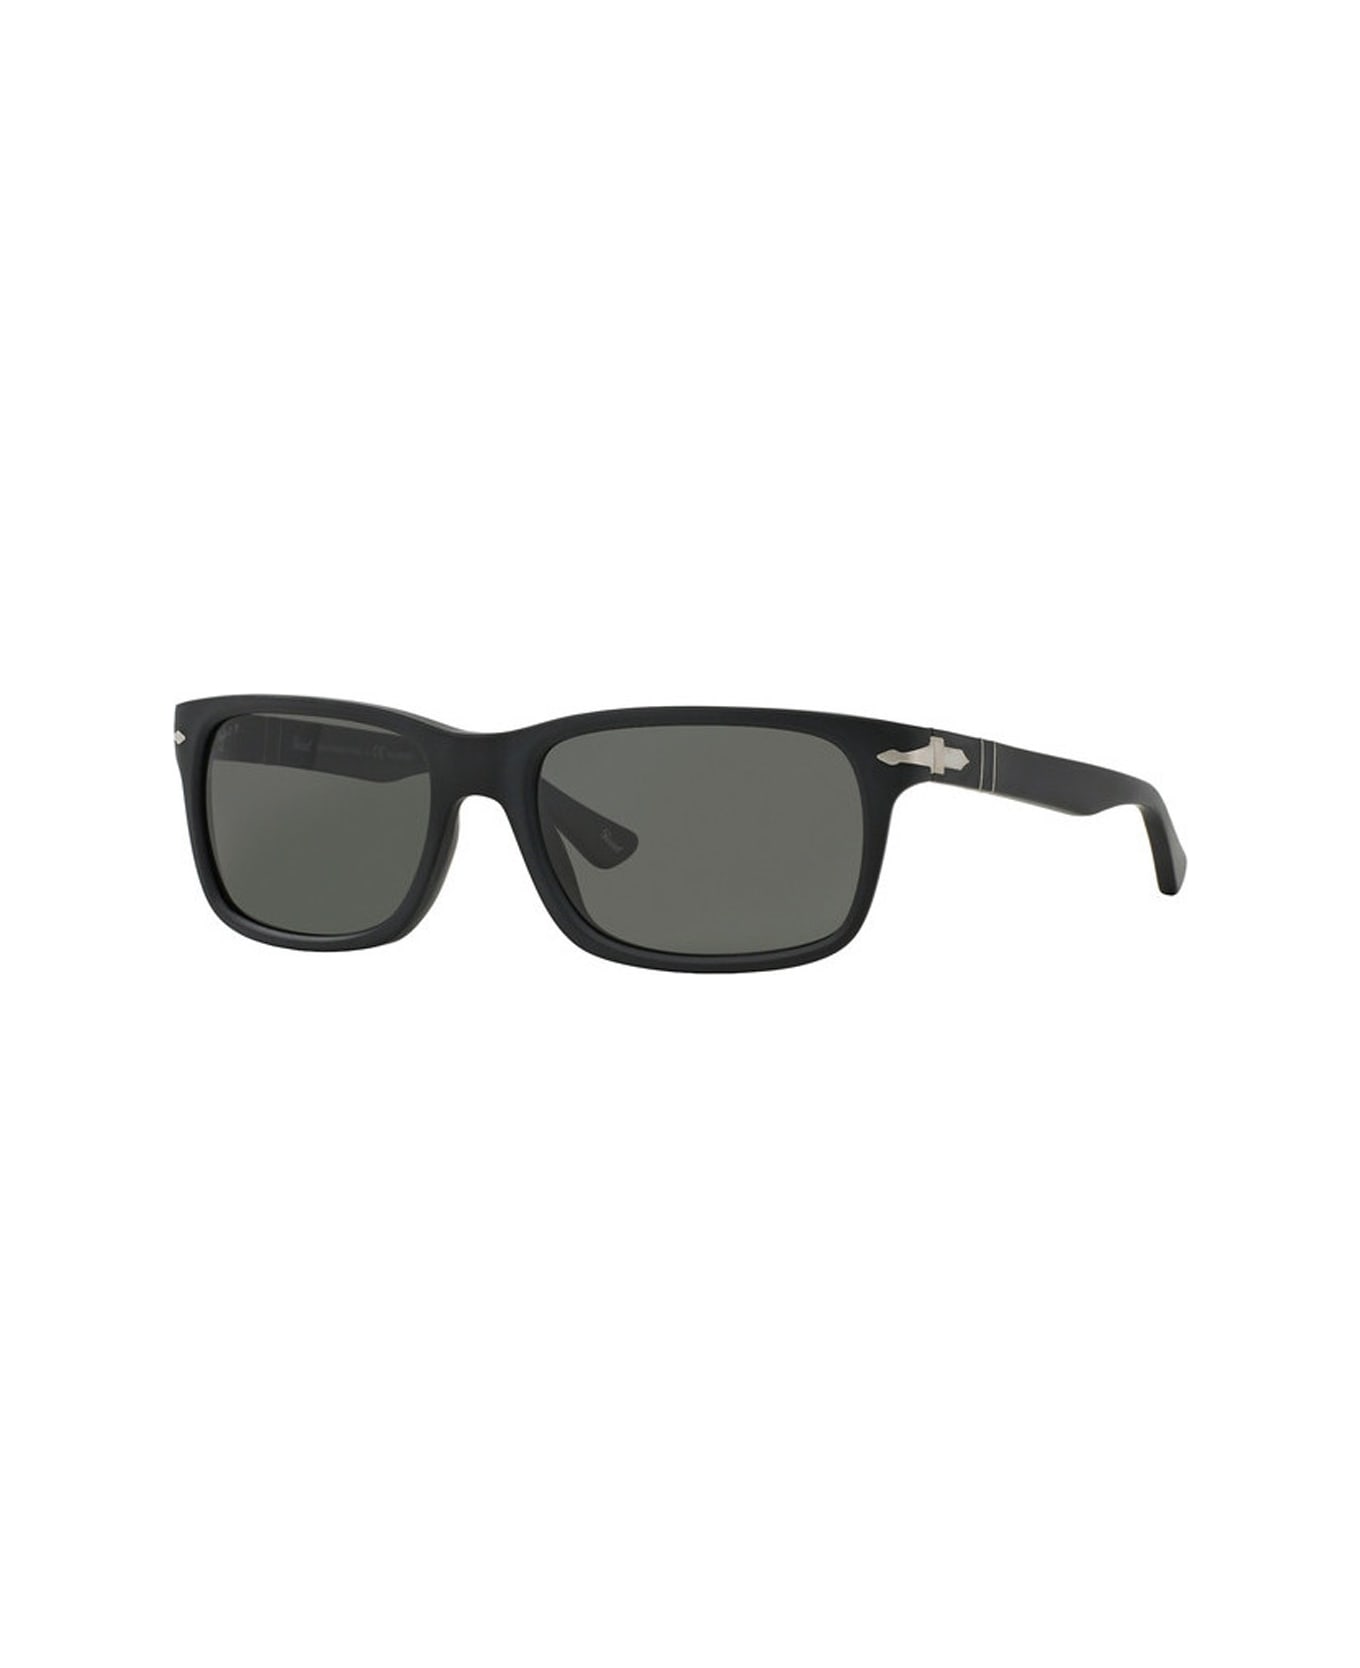 Persol Po3048s Sunglasses - Nero